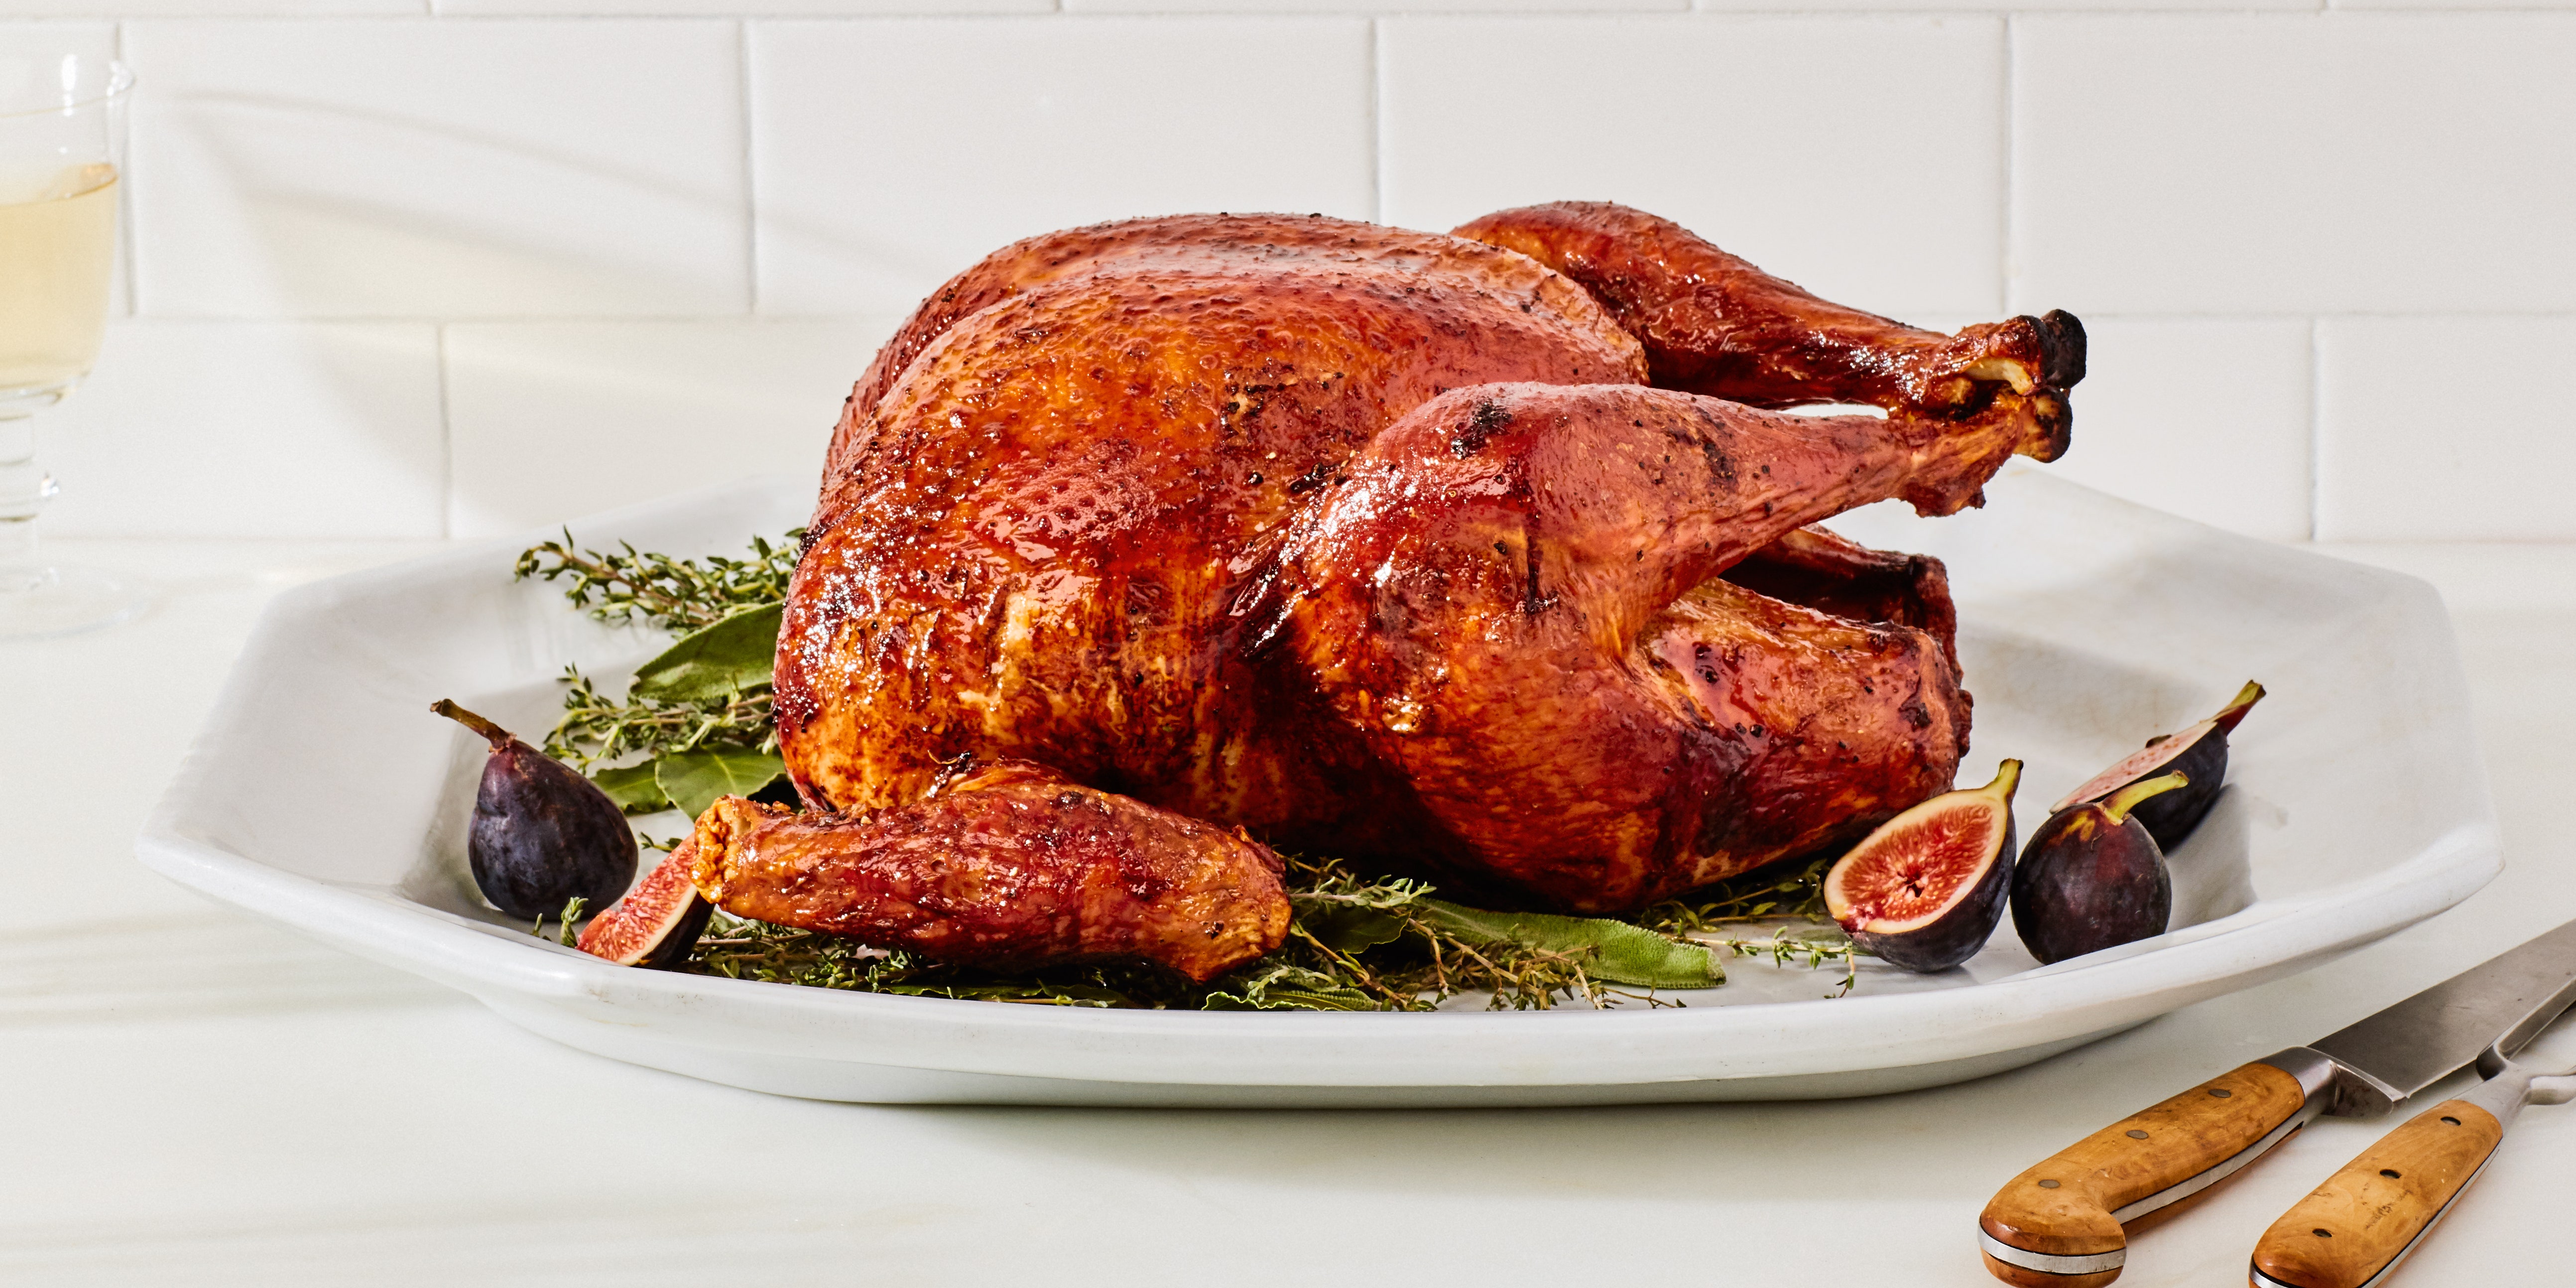 Pictures Of Cooked Turkeys - KibrisPDR